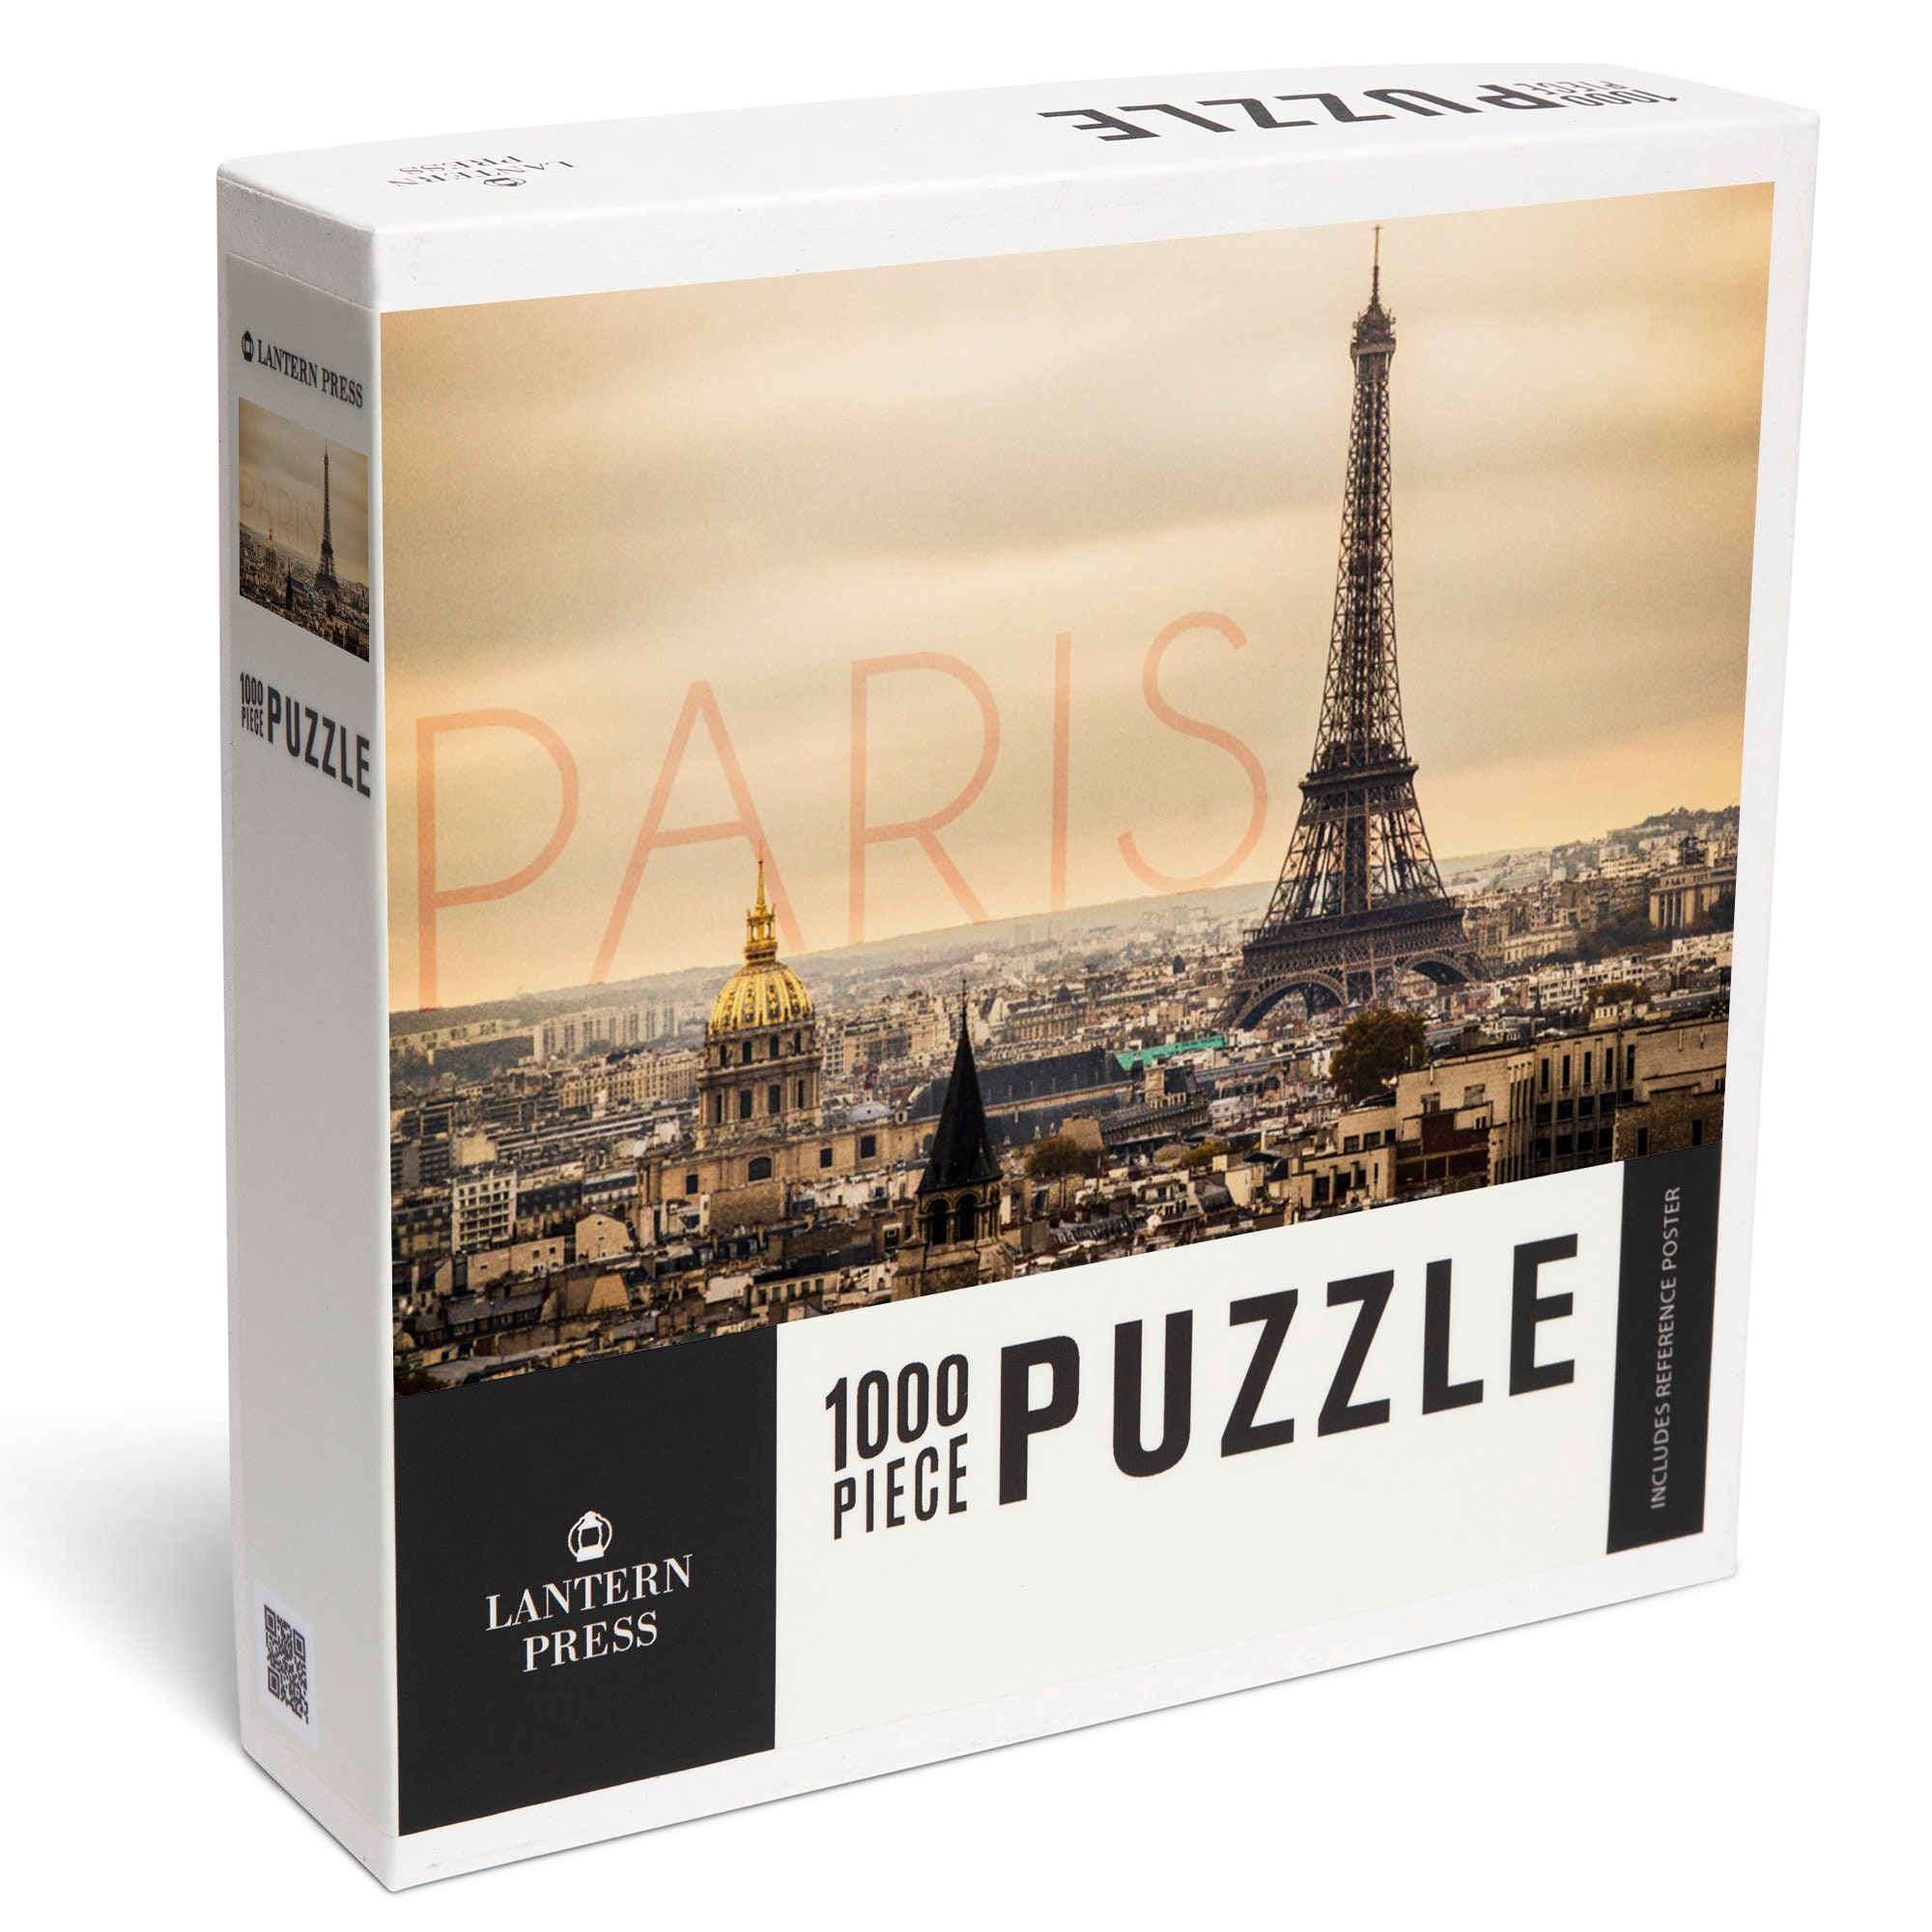 Dowdle Jigsaw Puzzle - Paris City of Lights - 1000 Piece 